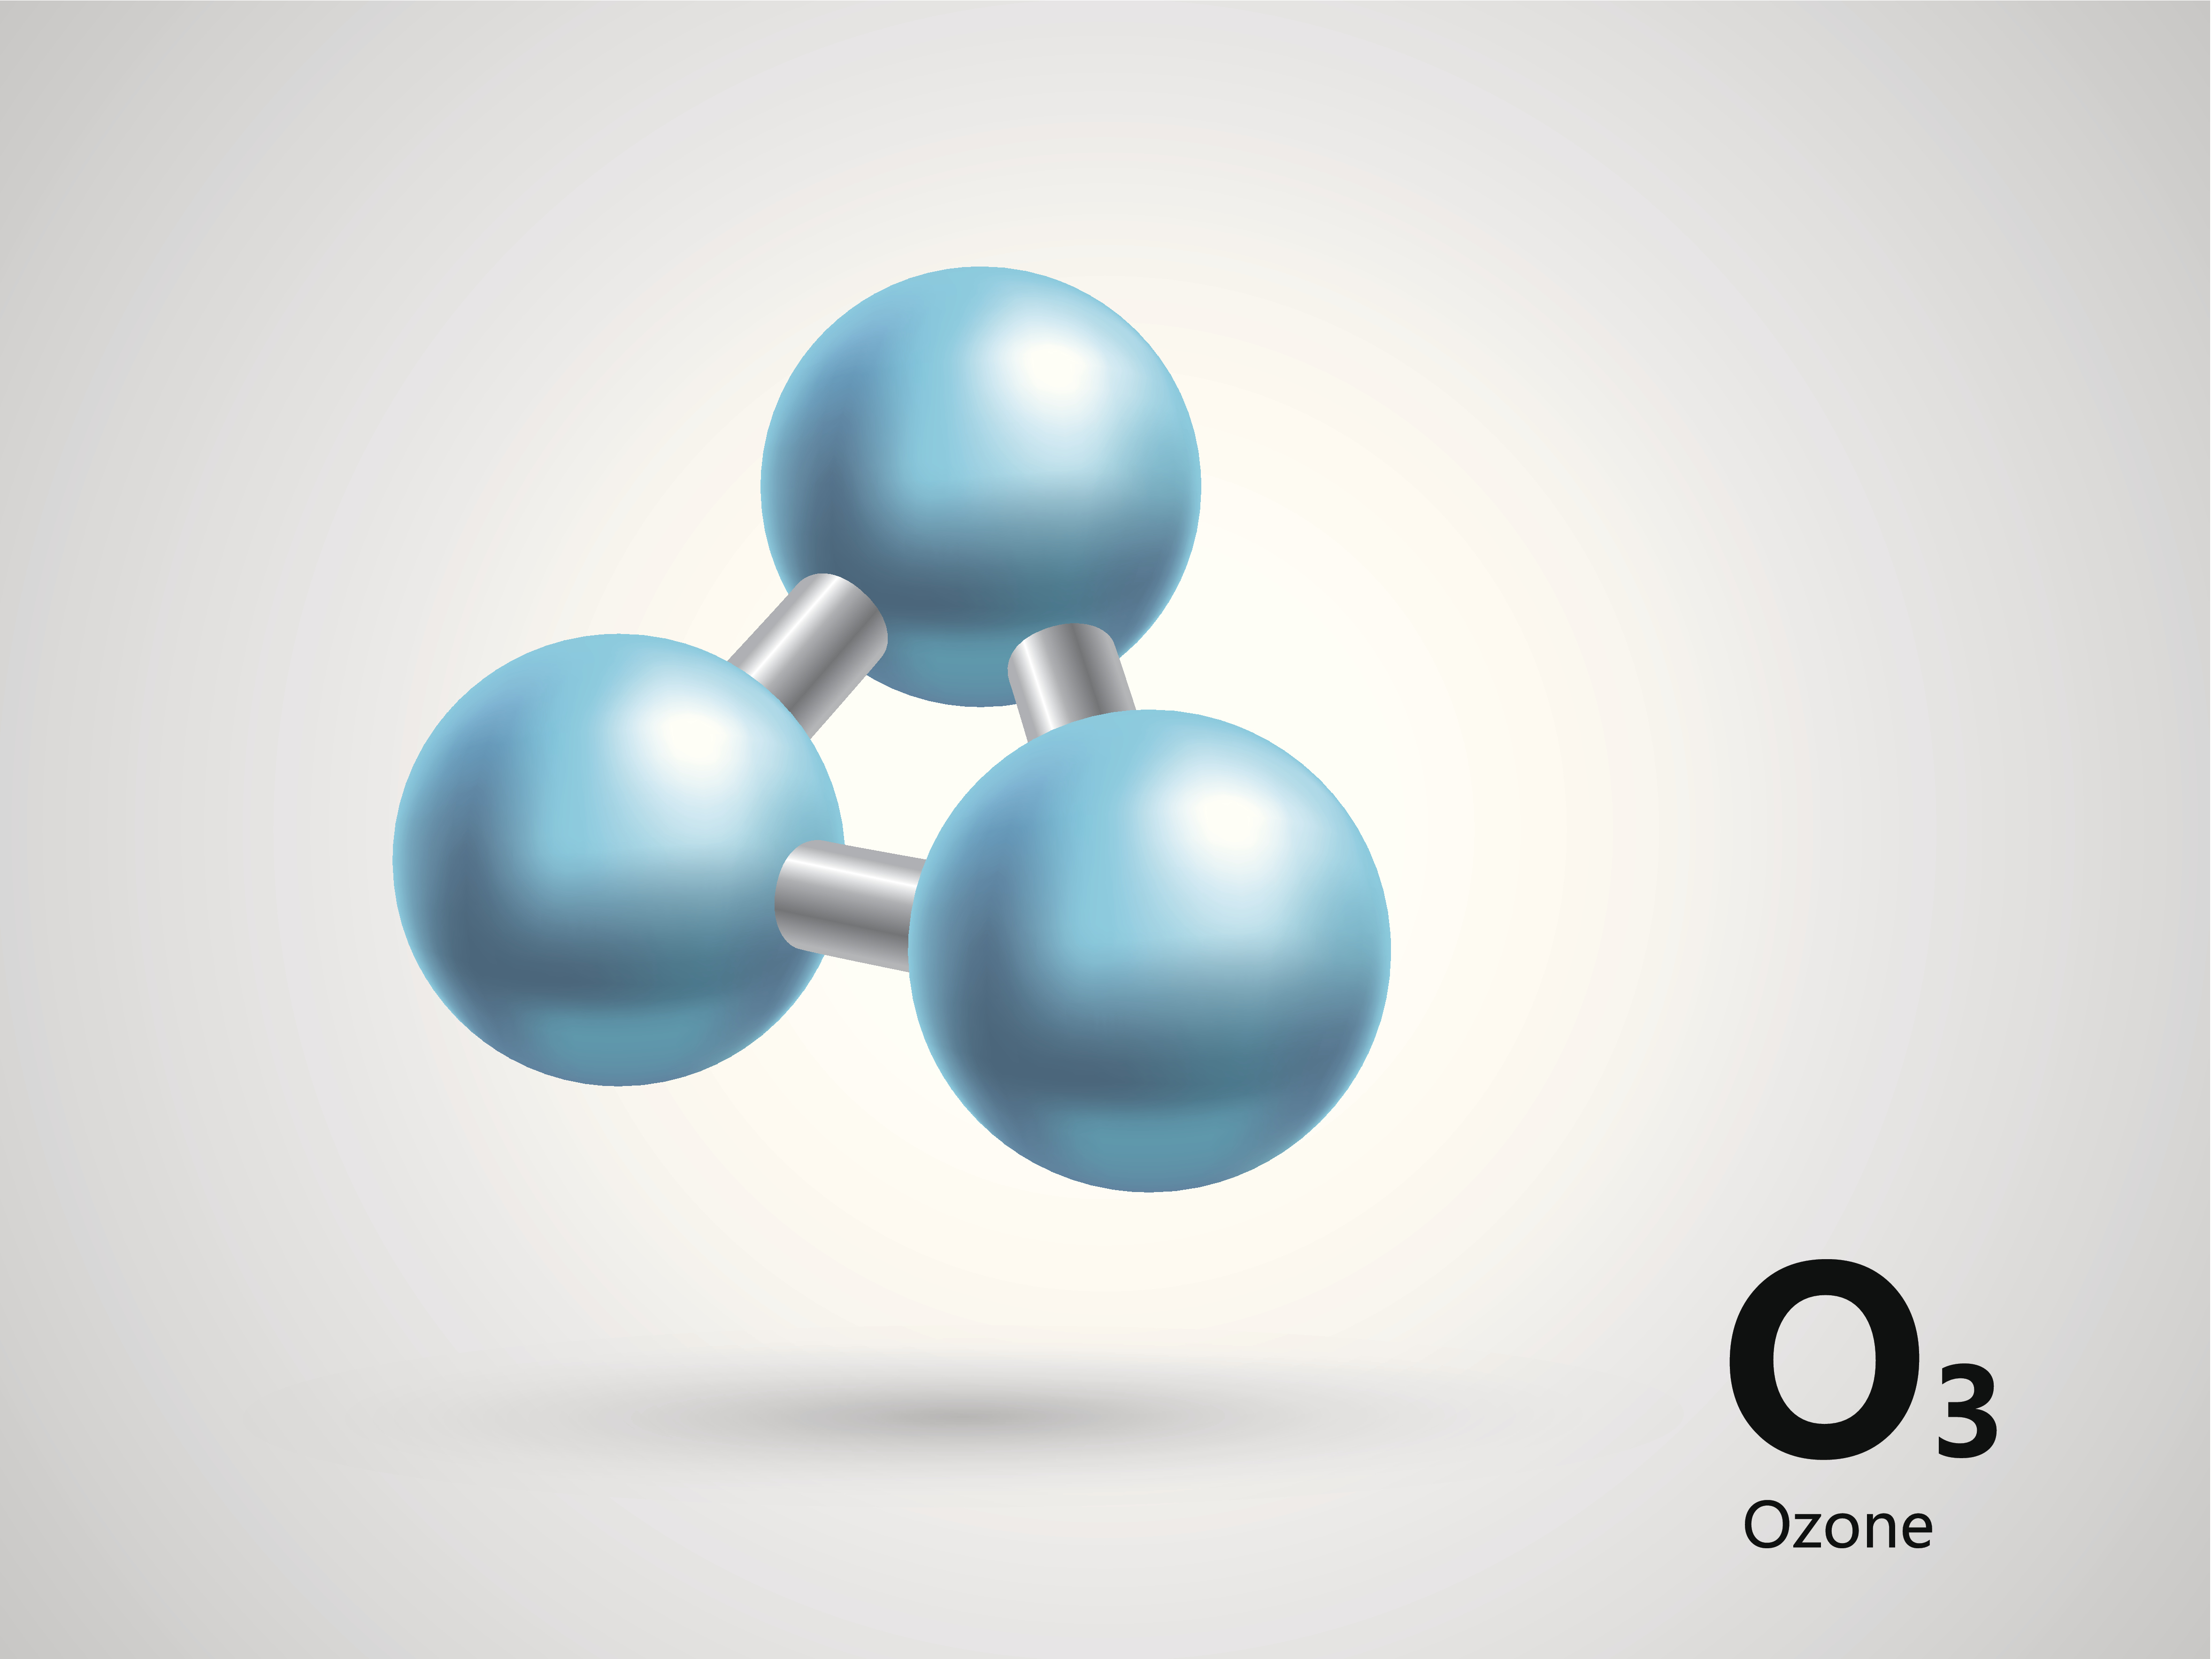  Ozone Molecule